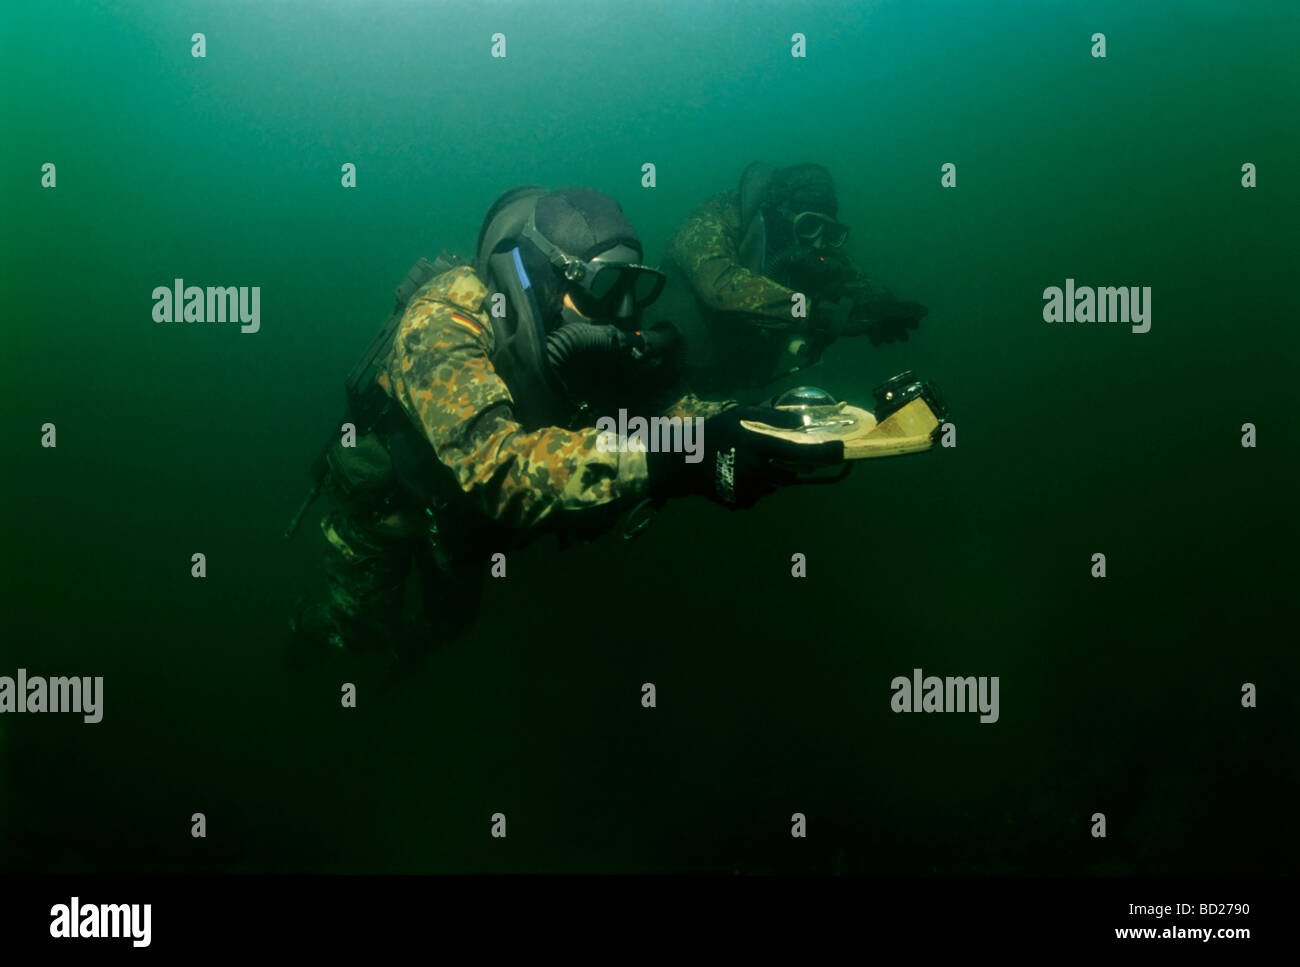 Des soldats des forces spéciales allemandes le Kampfschwimmerkompanie boussole formation plongée sous-marine. Eckernfoerde, Schleswig-Holstein, Baltique Banque D'Images